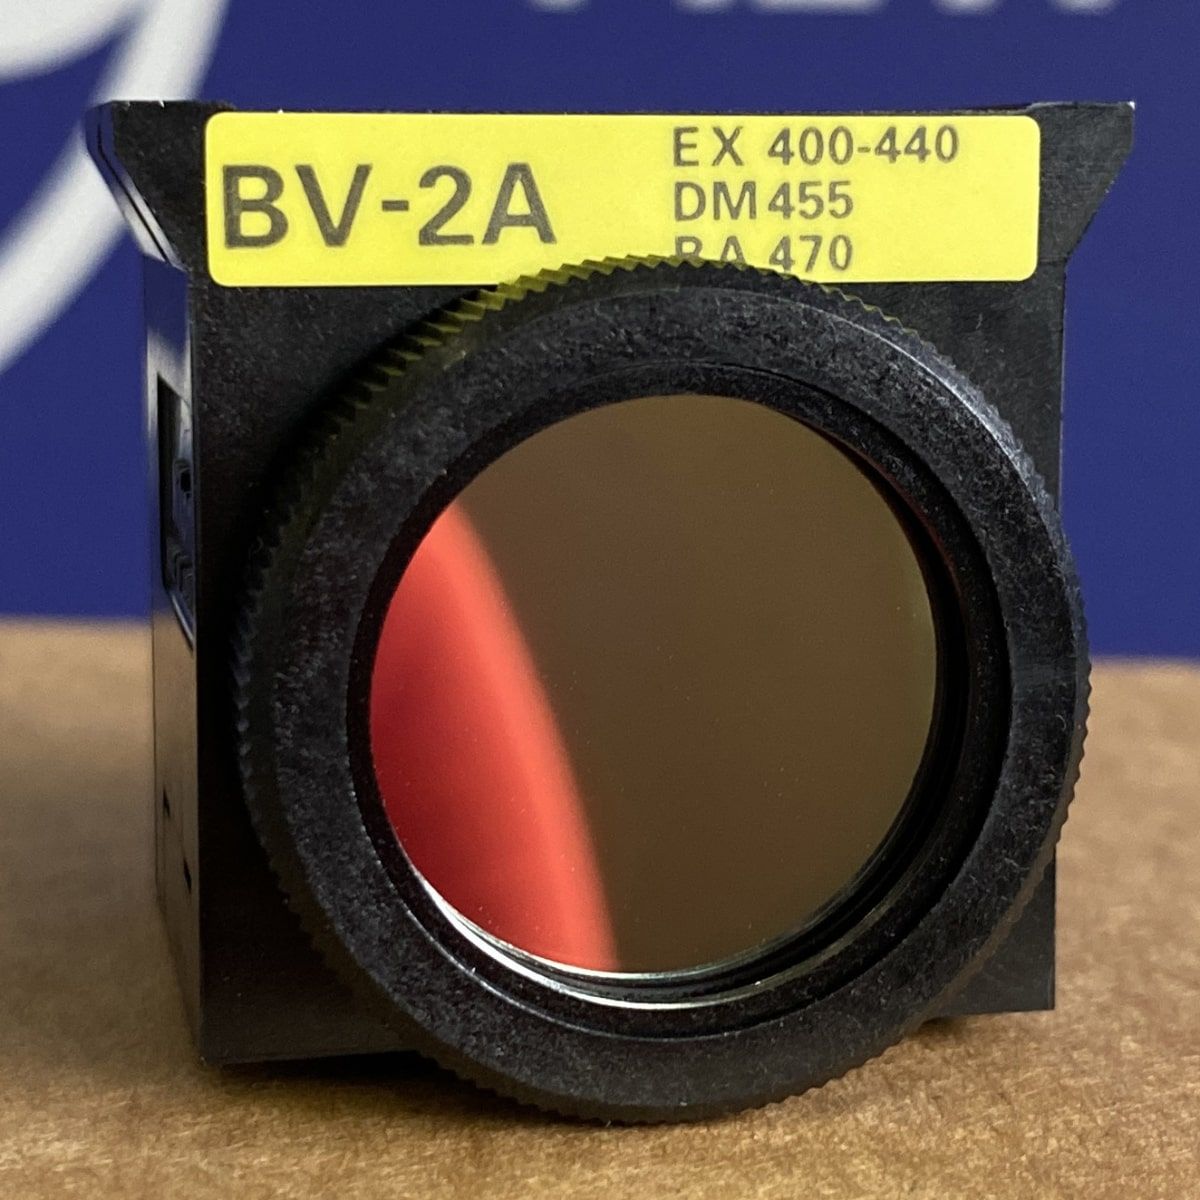 Блок фильтров C-FL для эпи-флуоресценции BV-2A 1